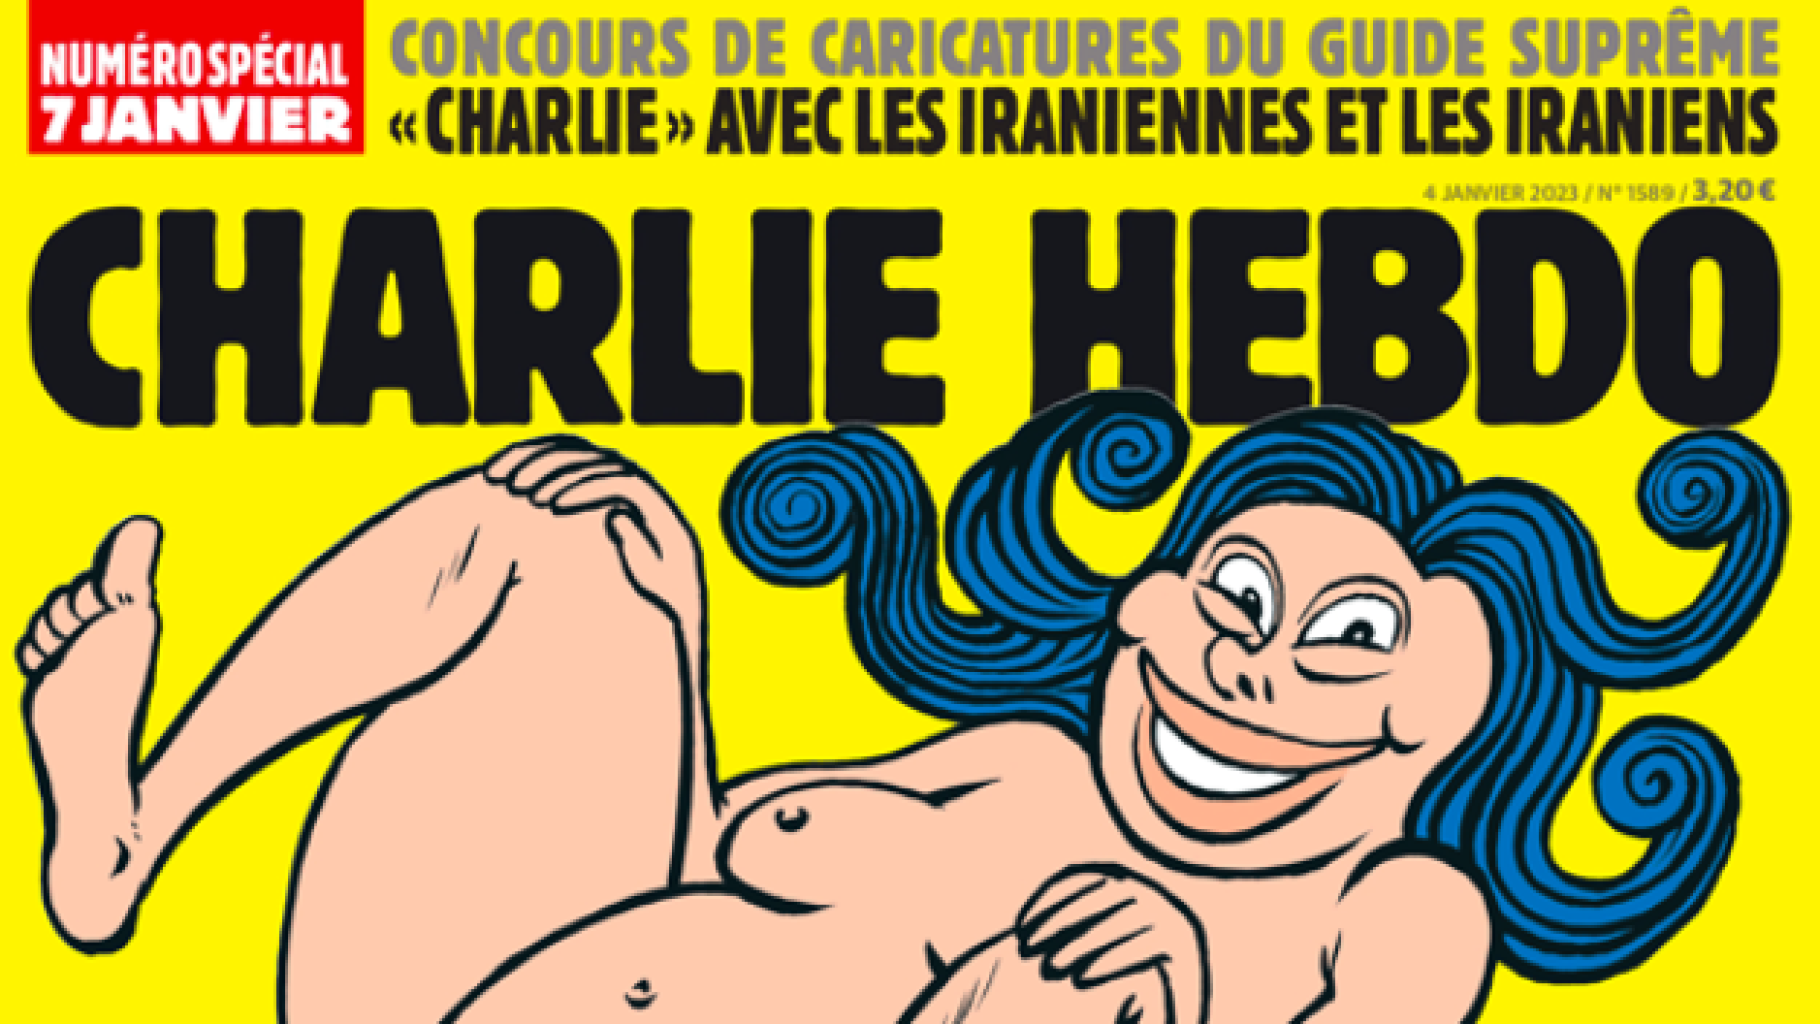 Charlie Hebdo publishes caricatures of Khamenei, provoking Iran's wrath